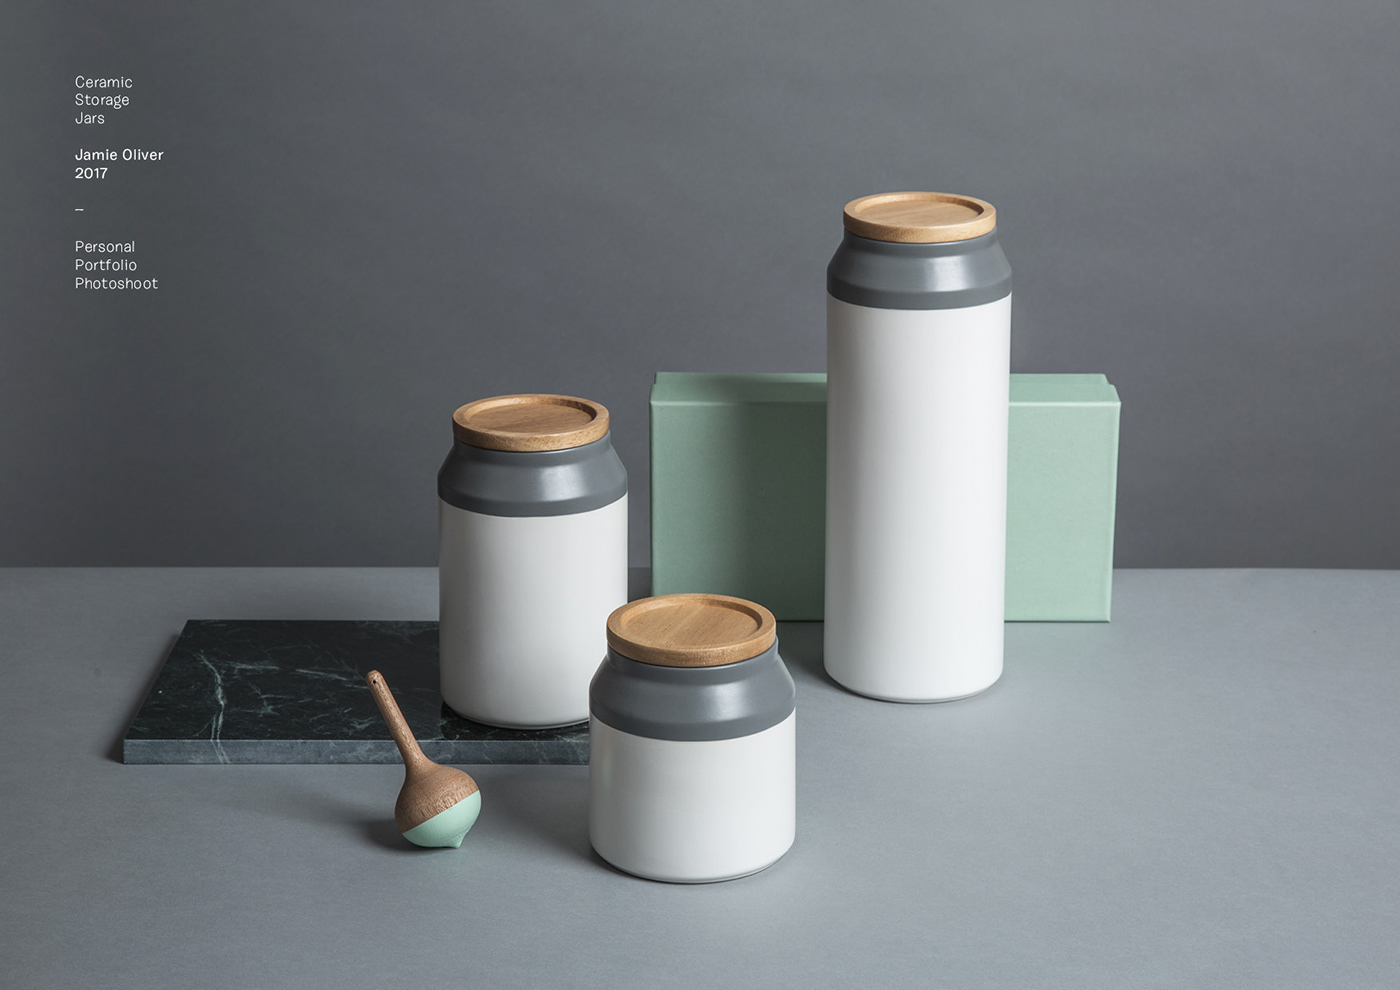 storage jars ceramic jars Jamie Oliver industrial design  design for manufactoring product design 